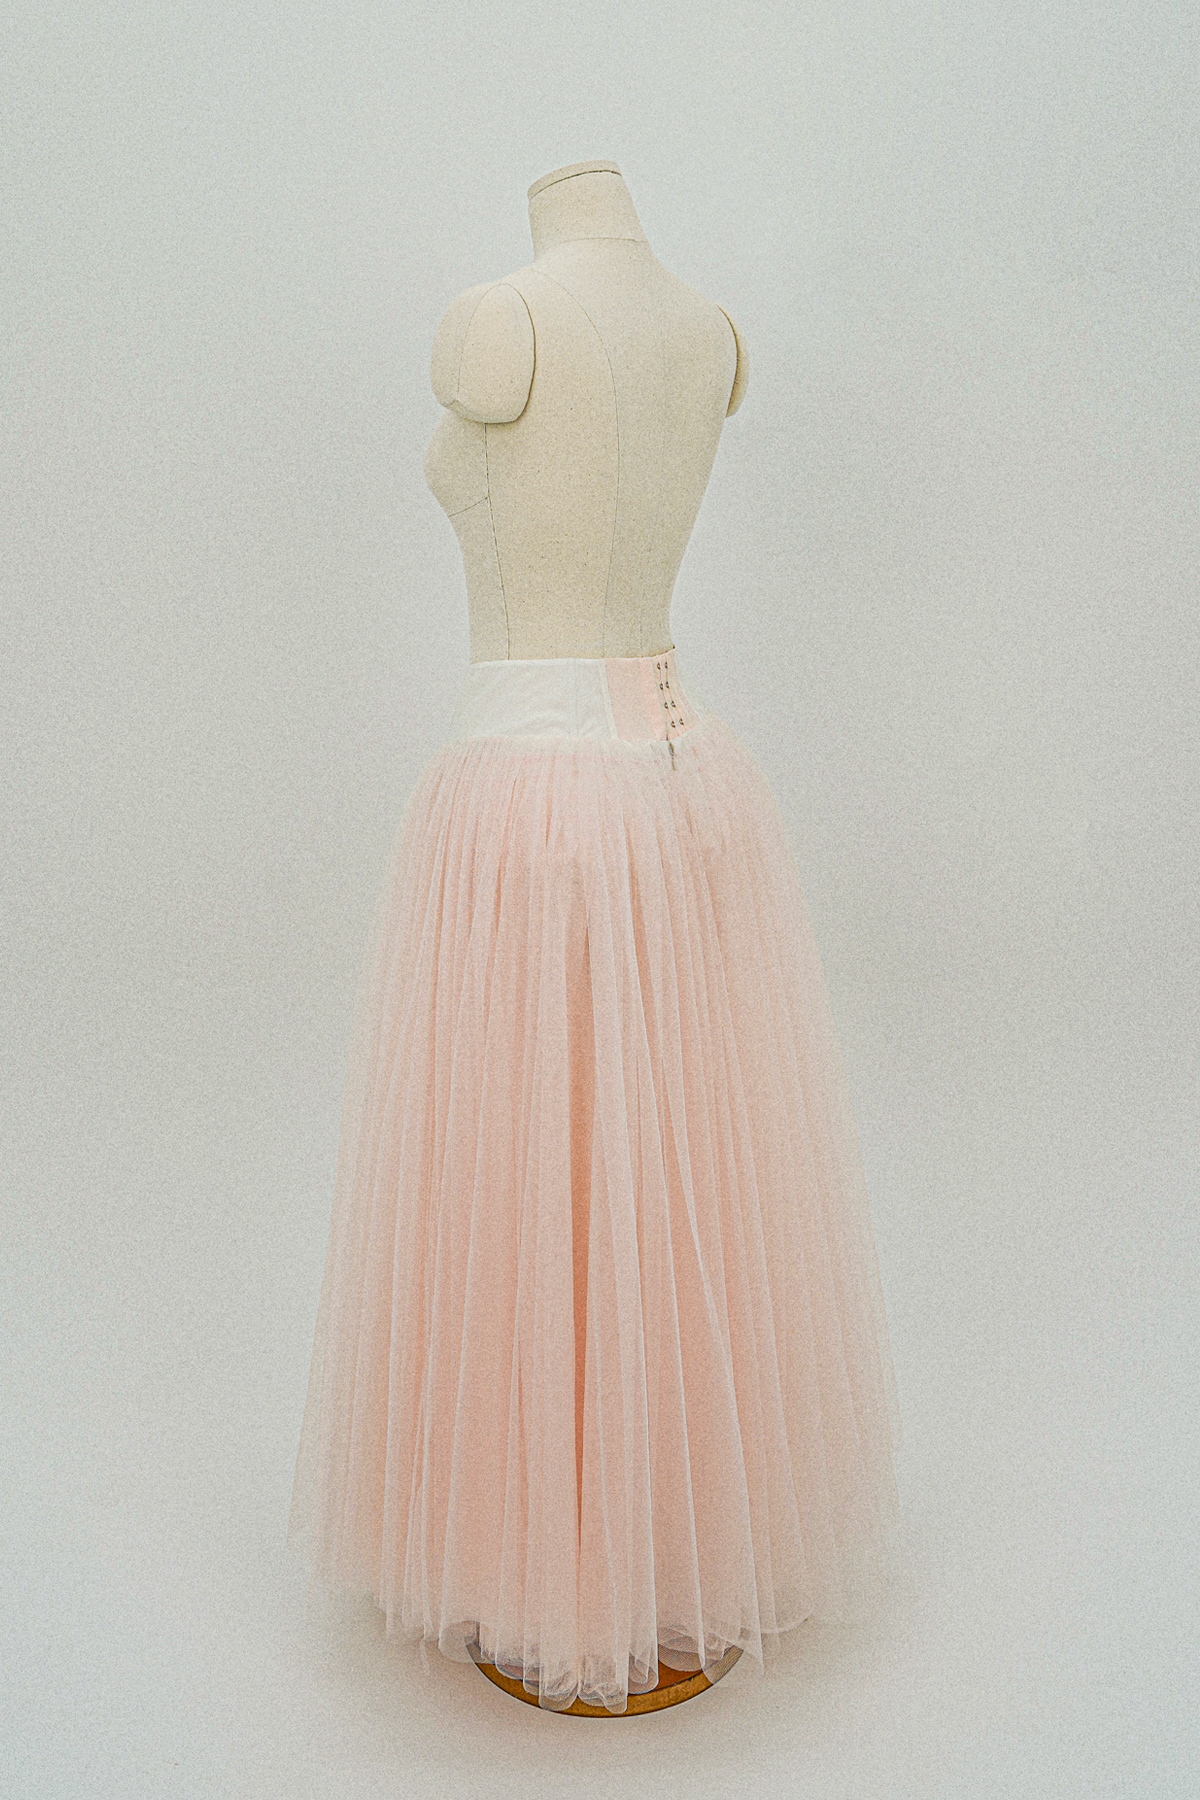 Romantic Tutu Skirt in rose water